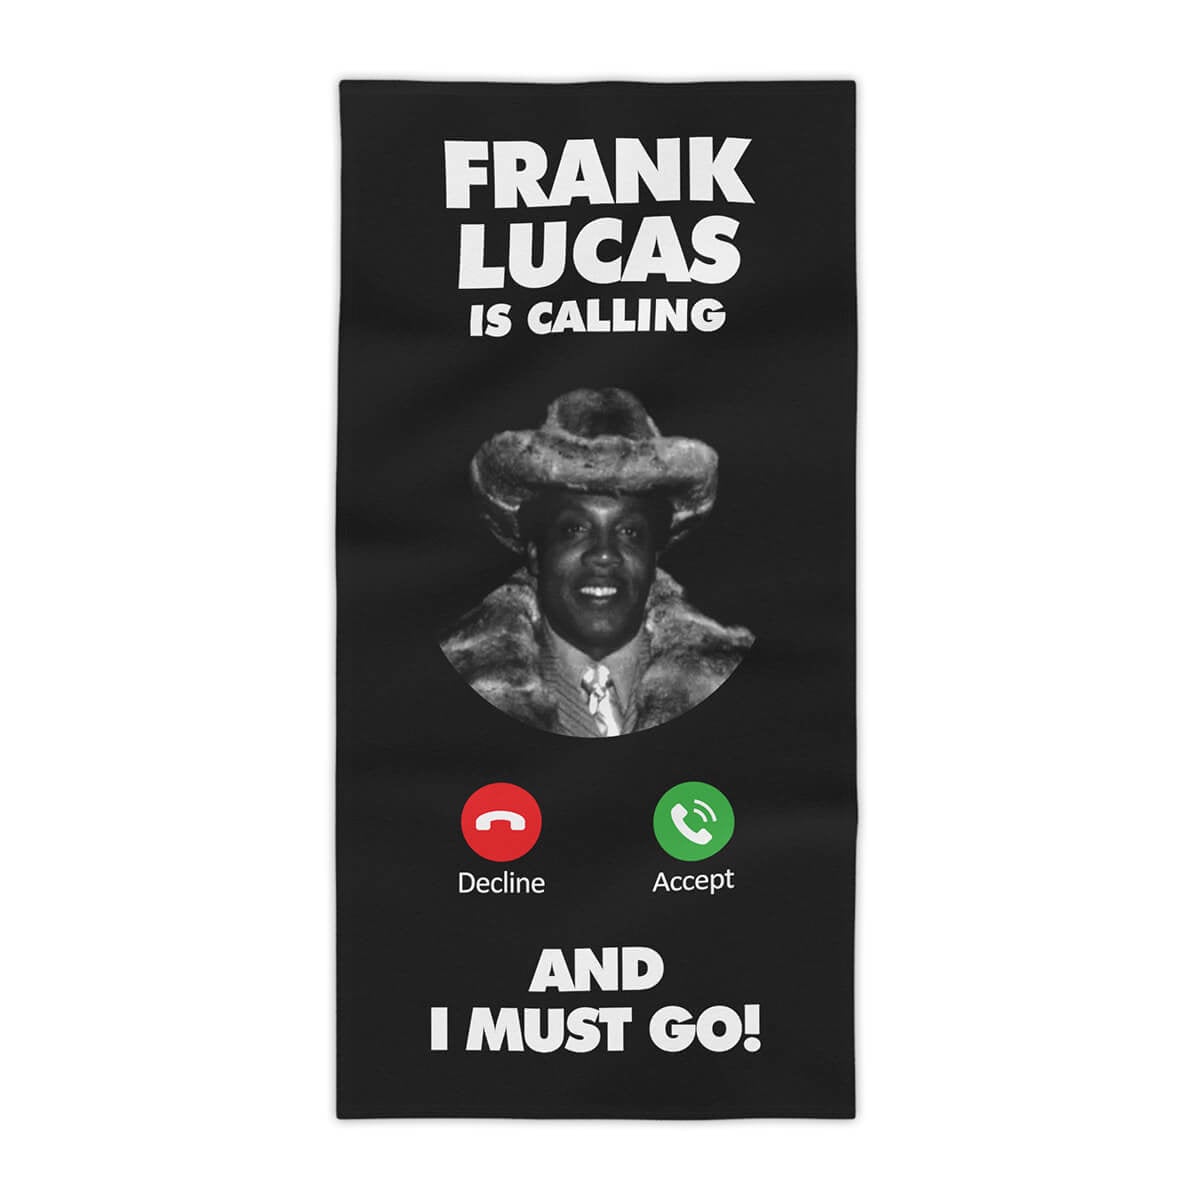 Френк Лукас телефонує, і я мушу йти, пляжний рушник гангстера